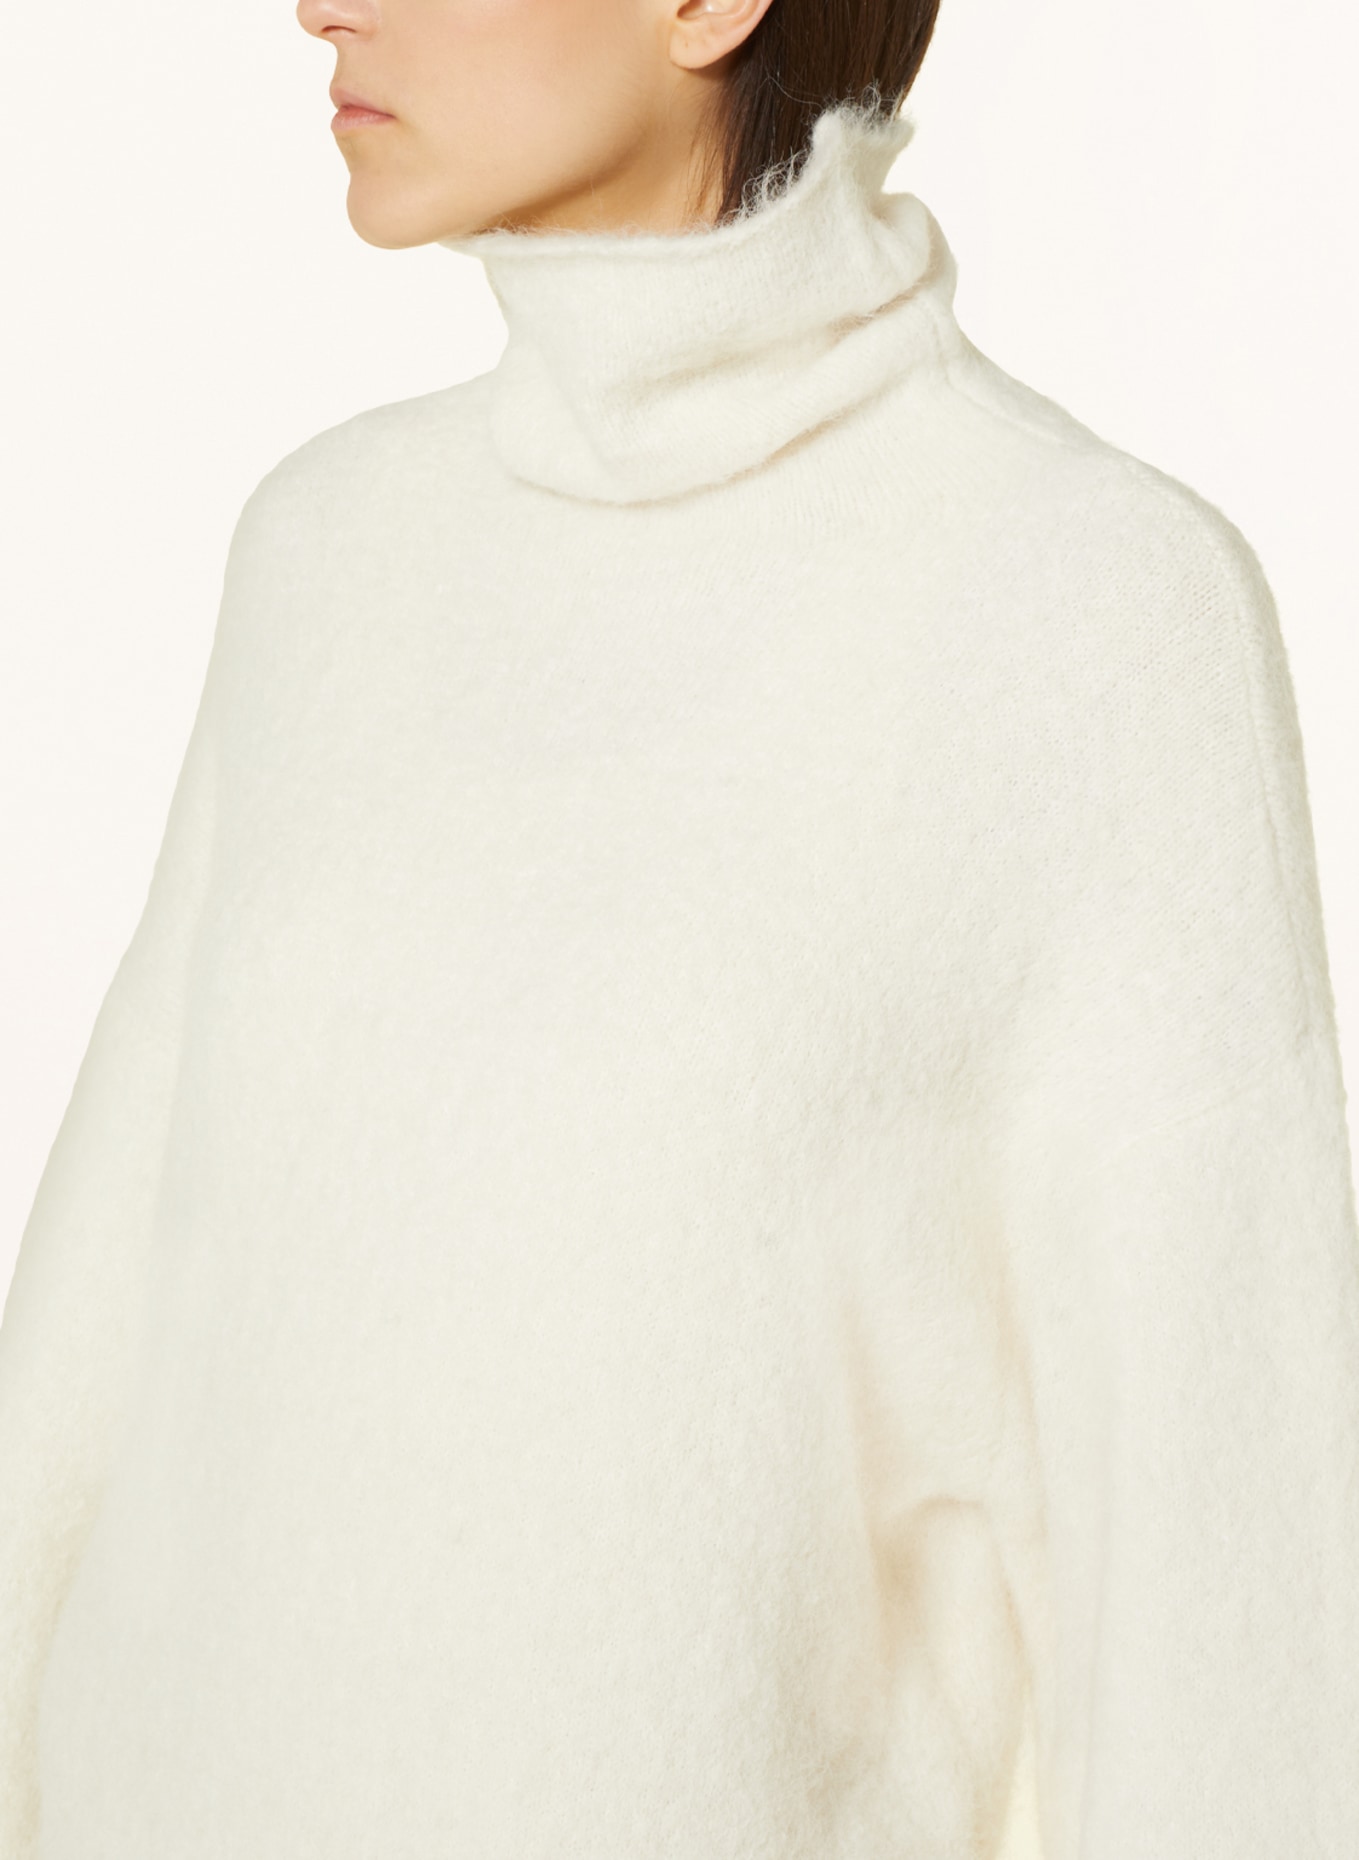 GESTUZ Sweater POSIAGZ with alpaca, Color: ECRU (Image 4)